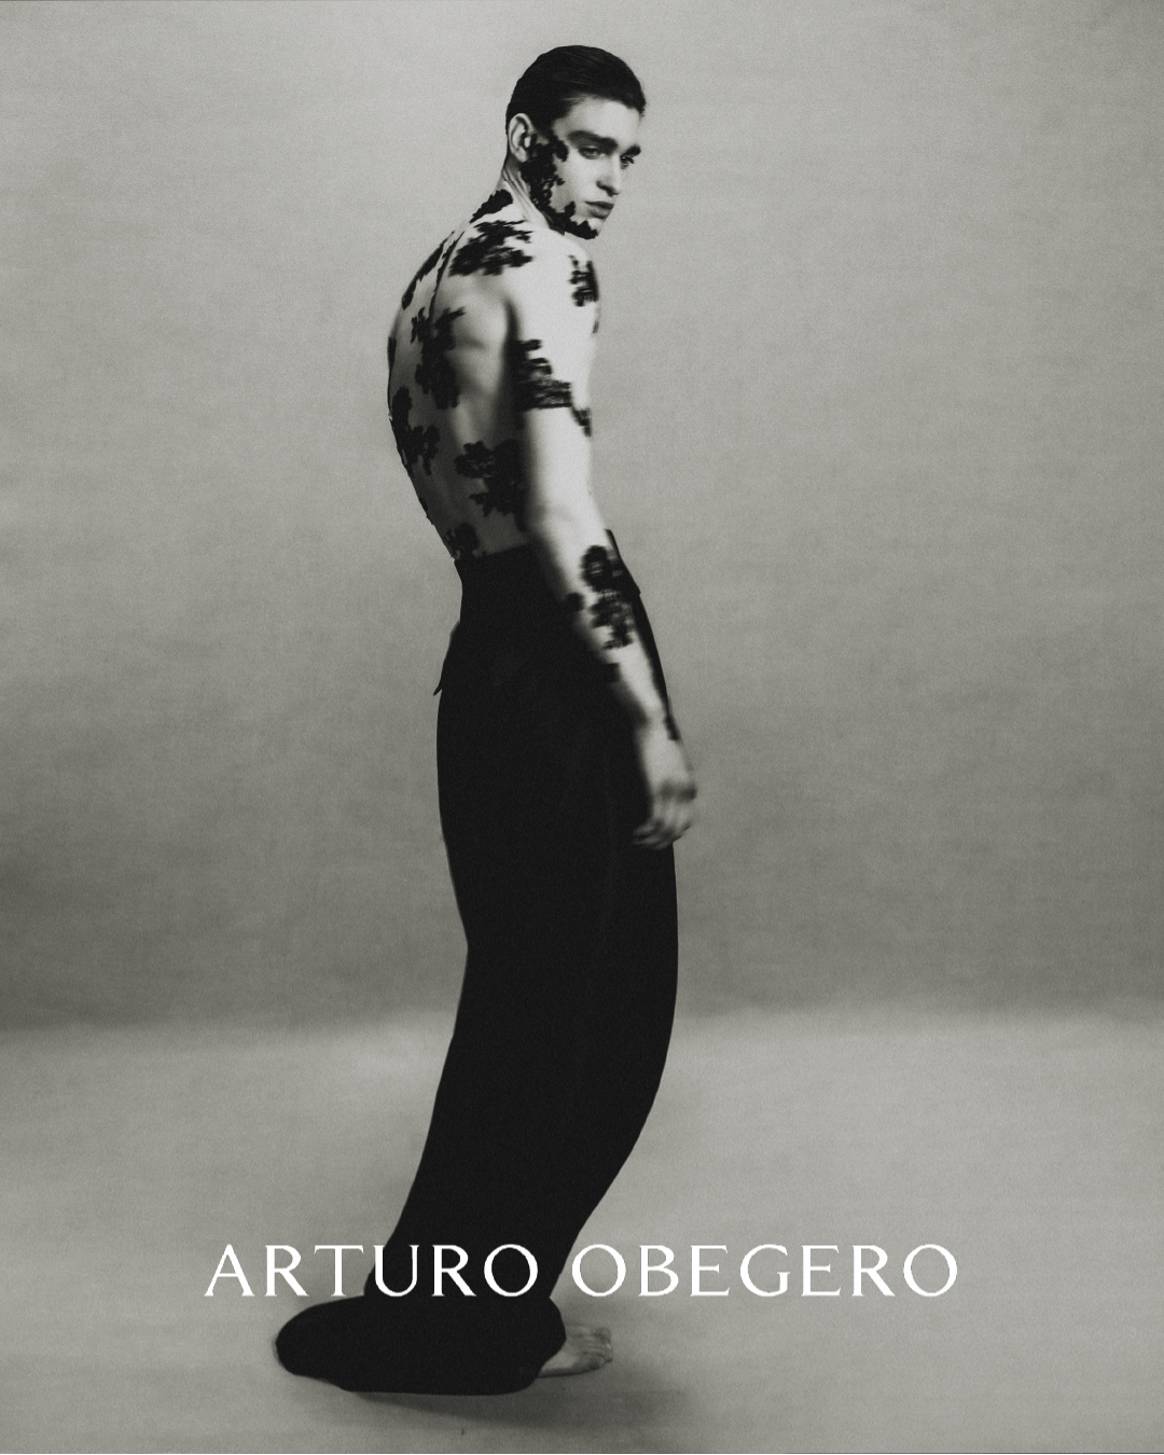 Arturo Obegero AW23 Rue de Rome campaign by Luka Booth. Image: Arturo Obegero